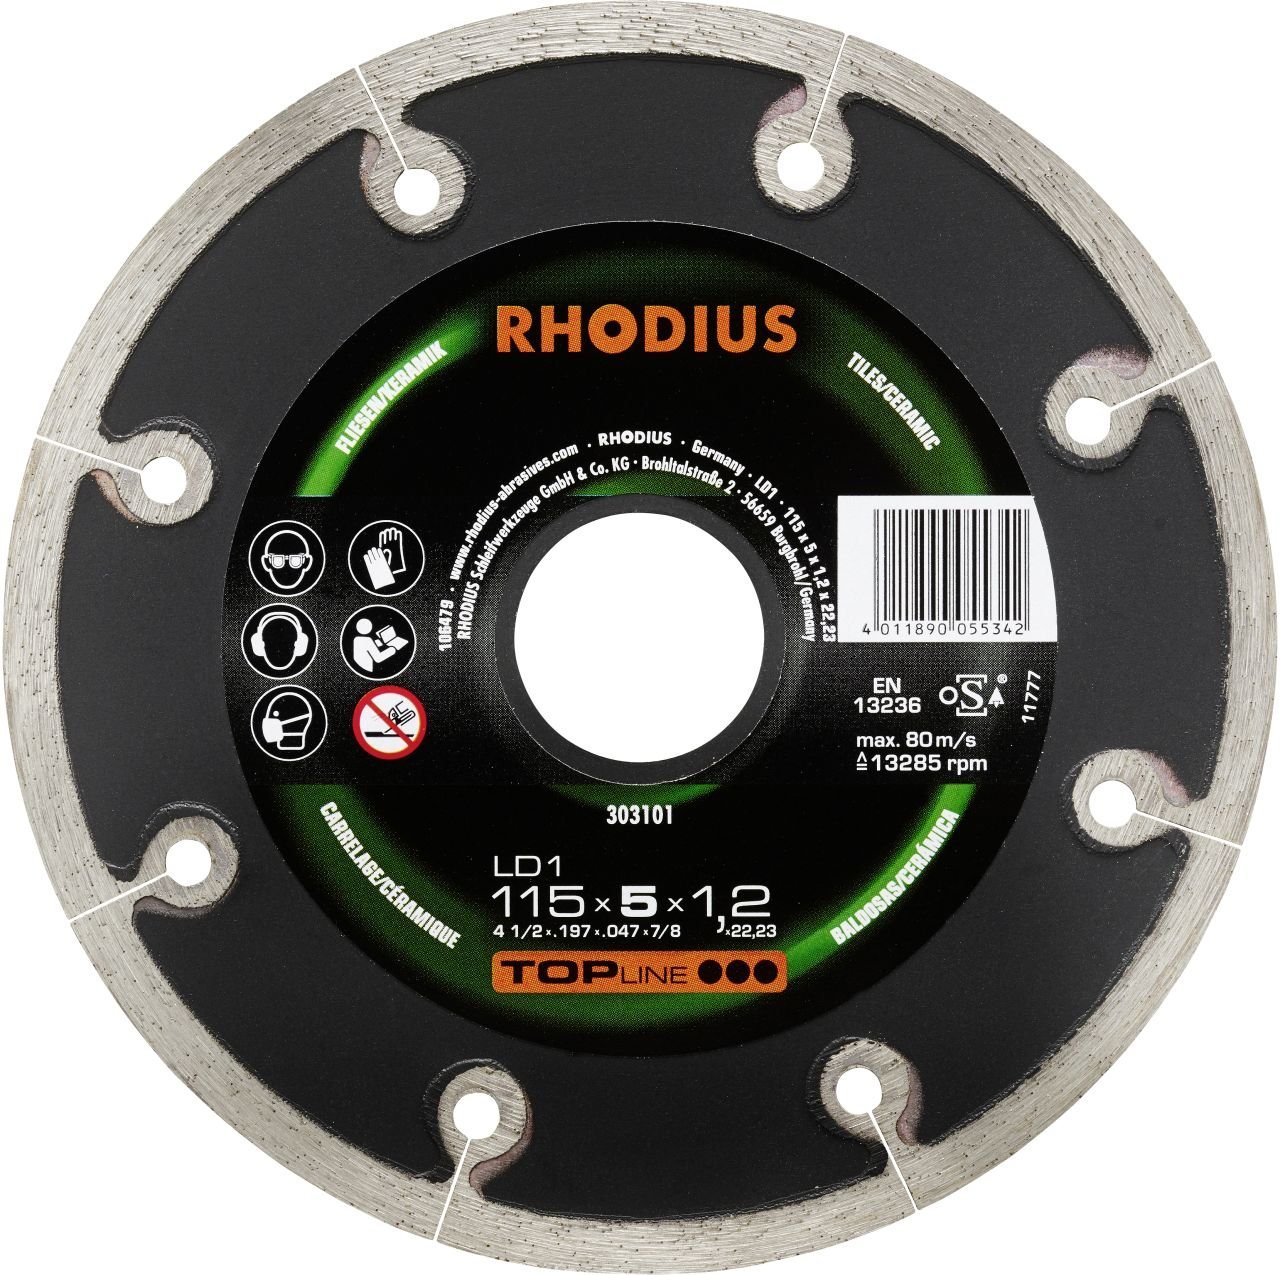 Rhodius Winkelschleifer Rhodius Diamanttrennscheibe LD1 Fliesen Ø 115 mm von Rhodius